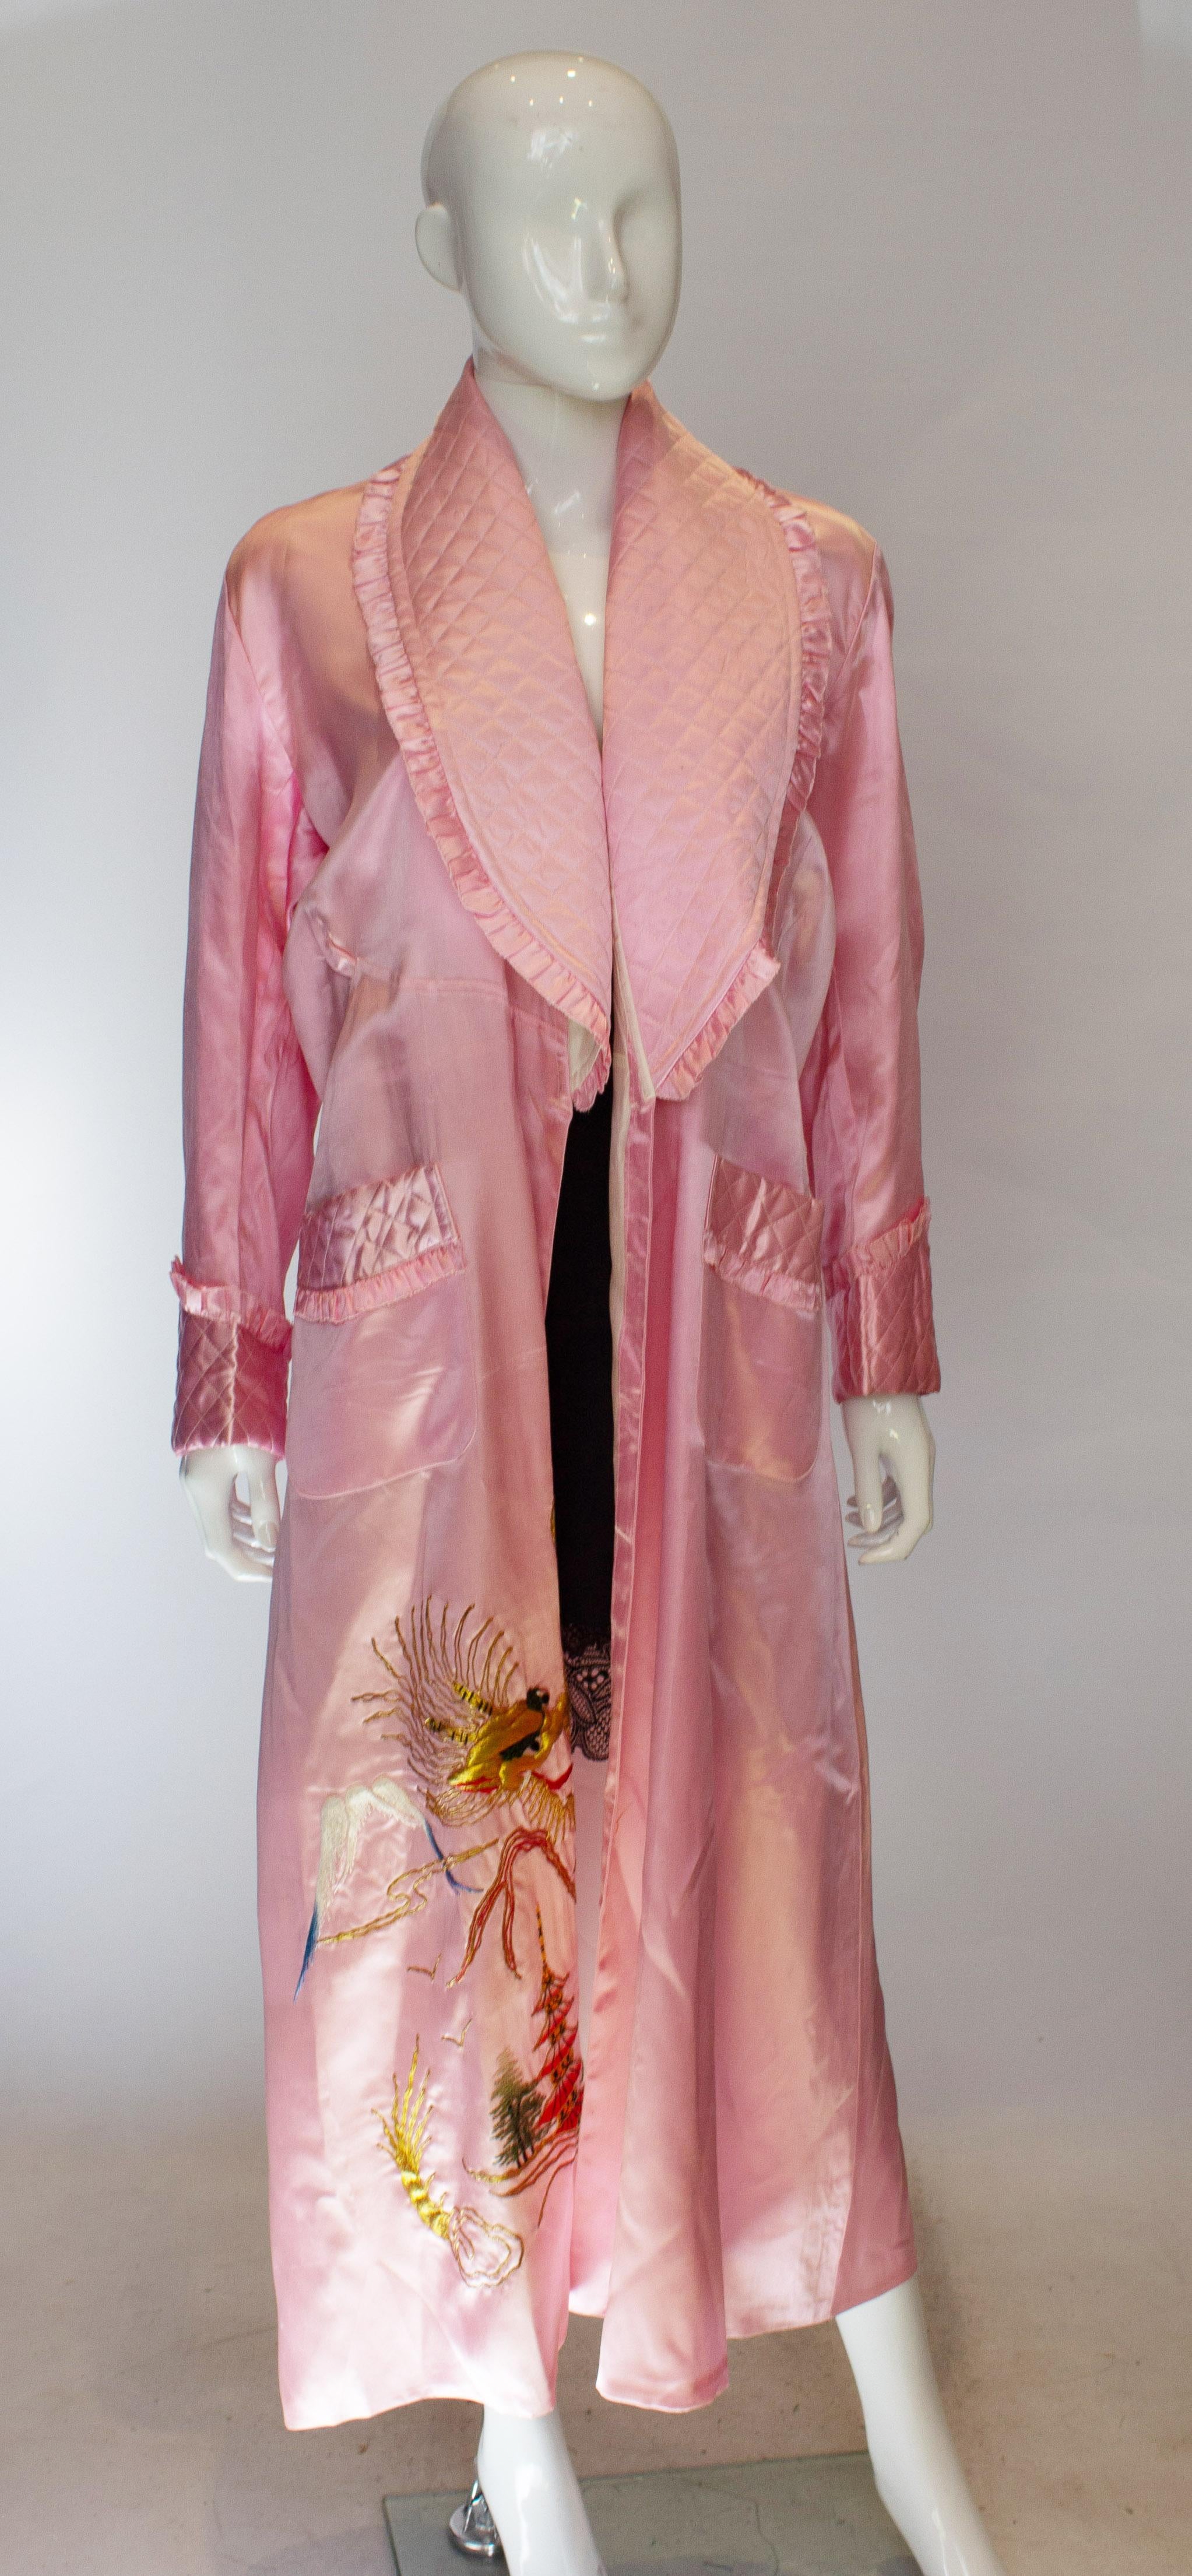 Hübsches rosa Vintage-Gewand mit gestepptem Rüschenschalkragen und zwei gesteppten Taschen. Die Robe ist gefüttert und hat Stickerei detail.Measurements Büste bis zu 41'', Länge 52''